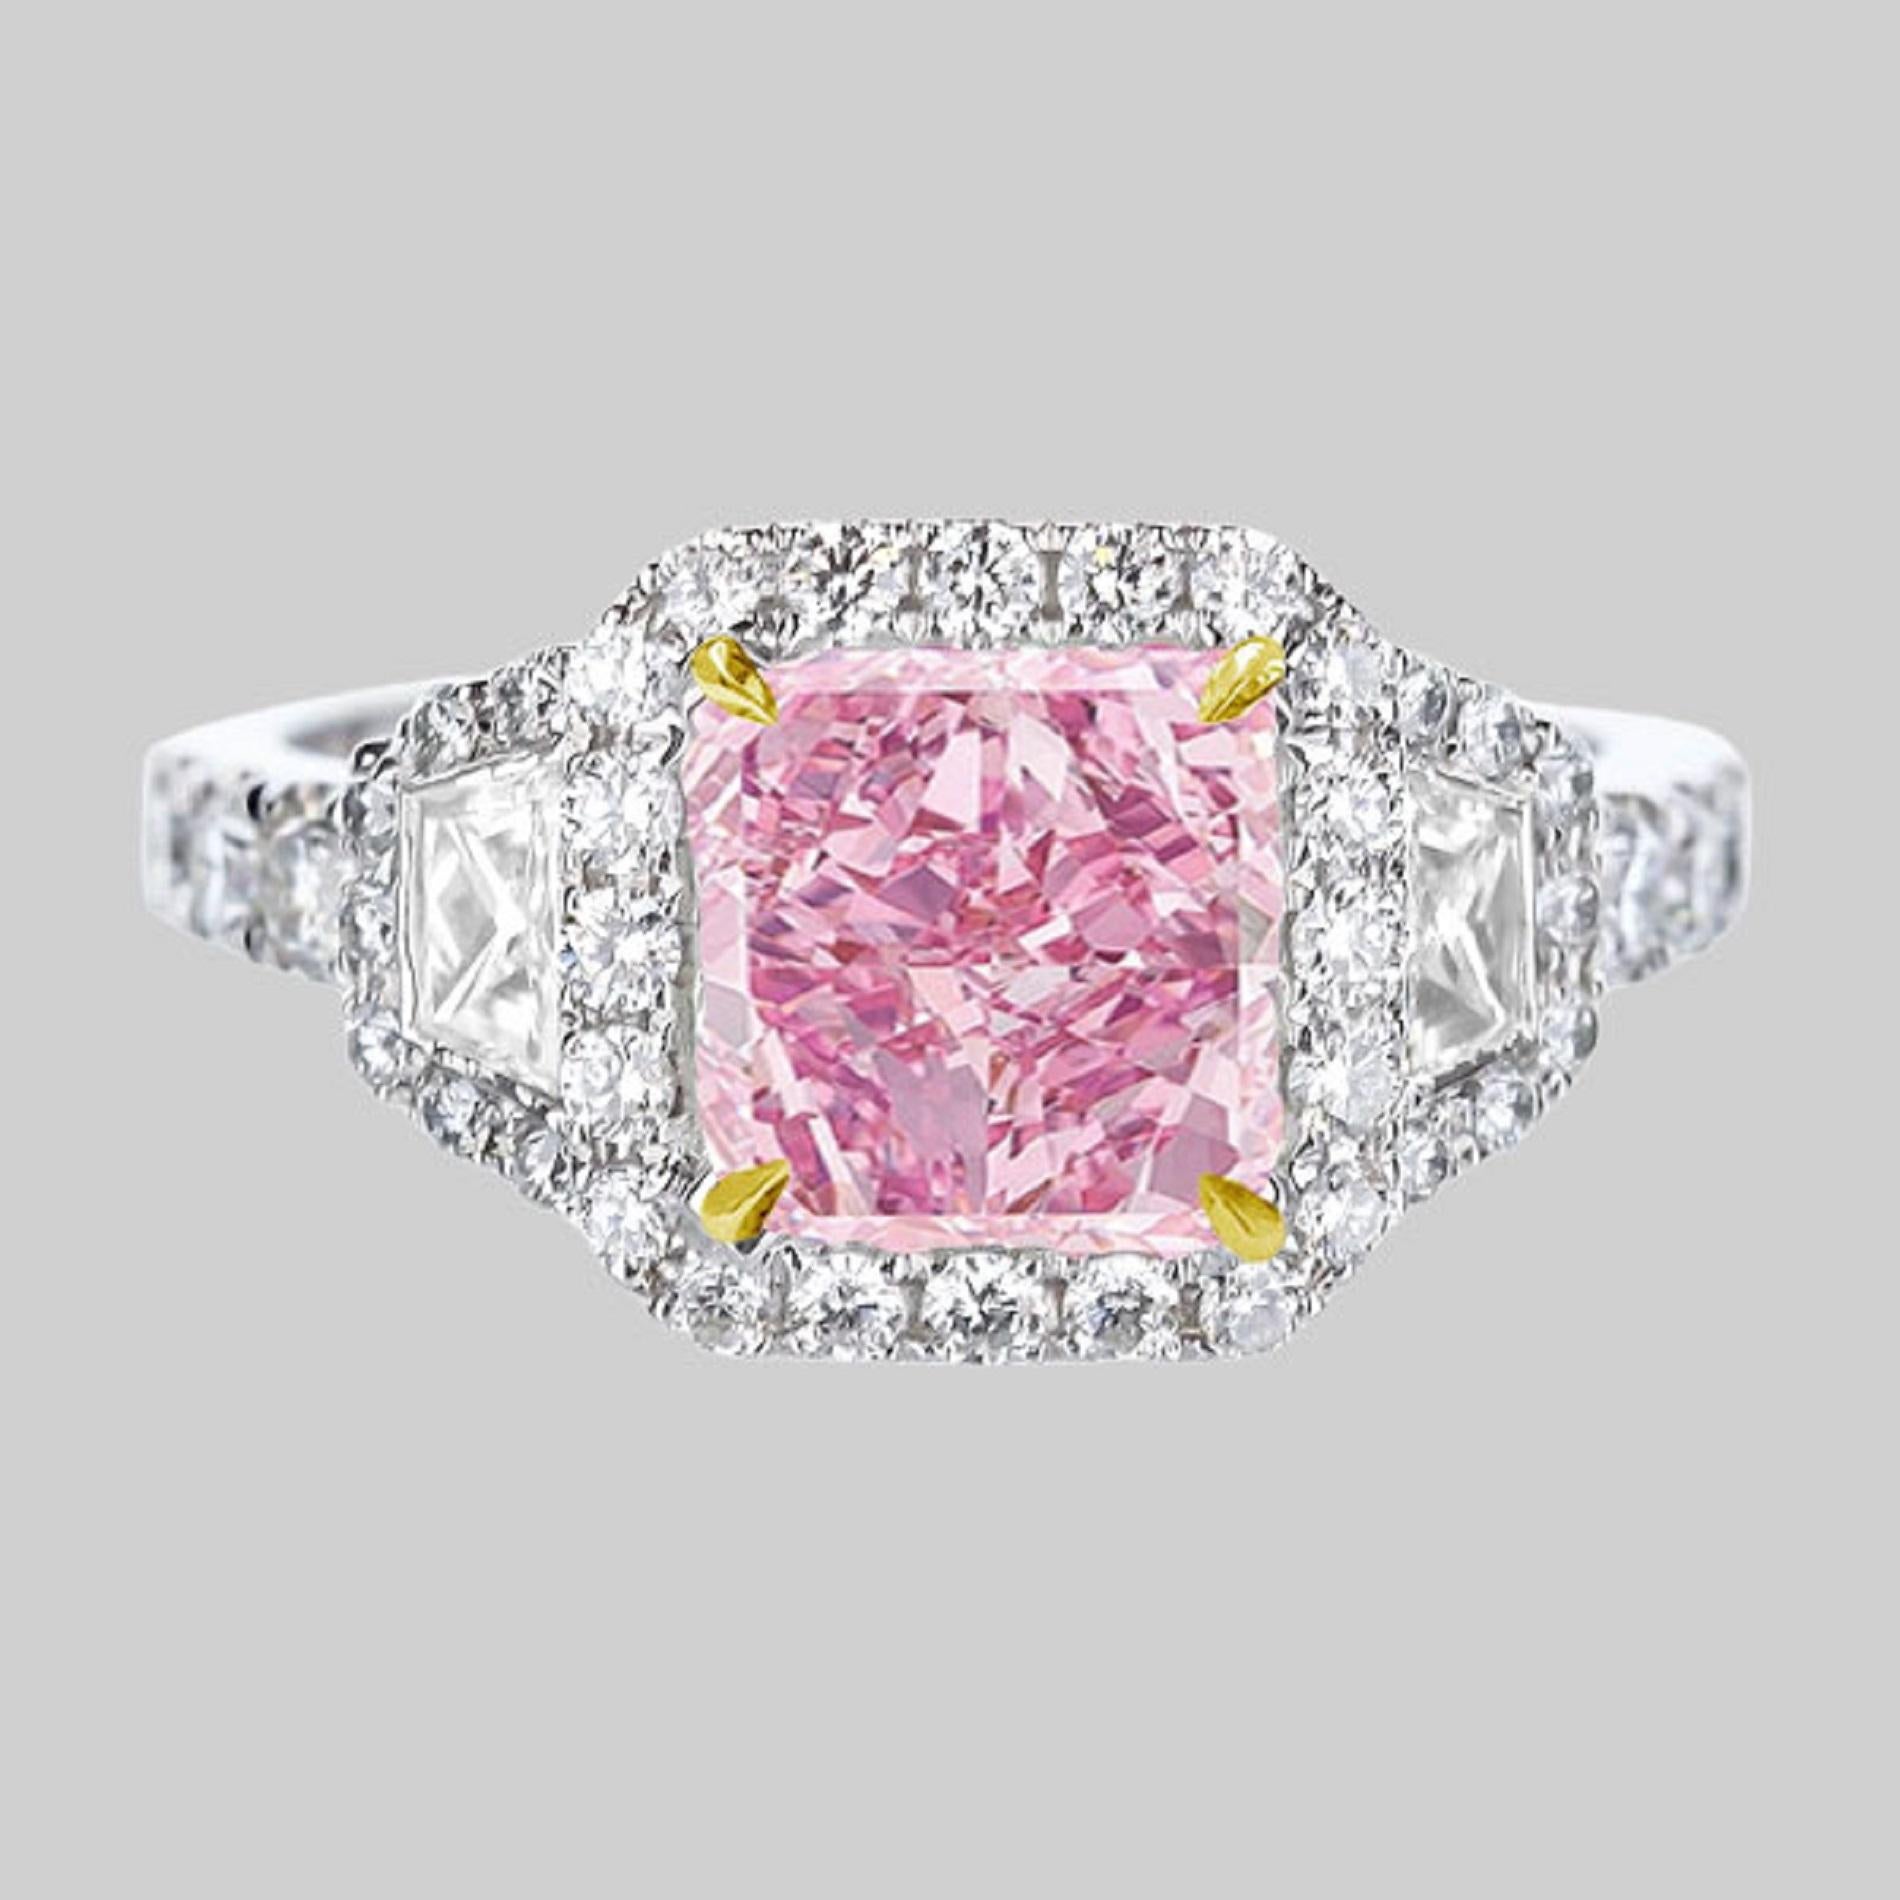 10 carat pink diamond ring